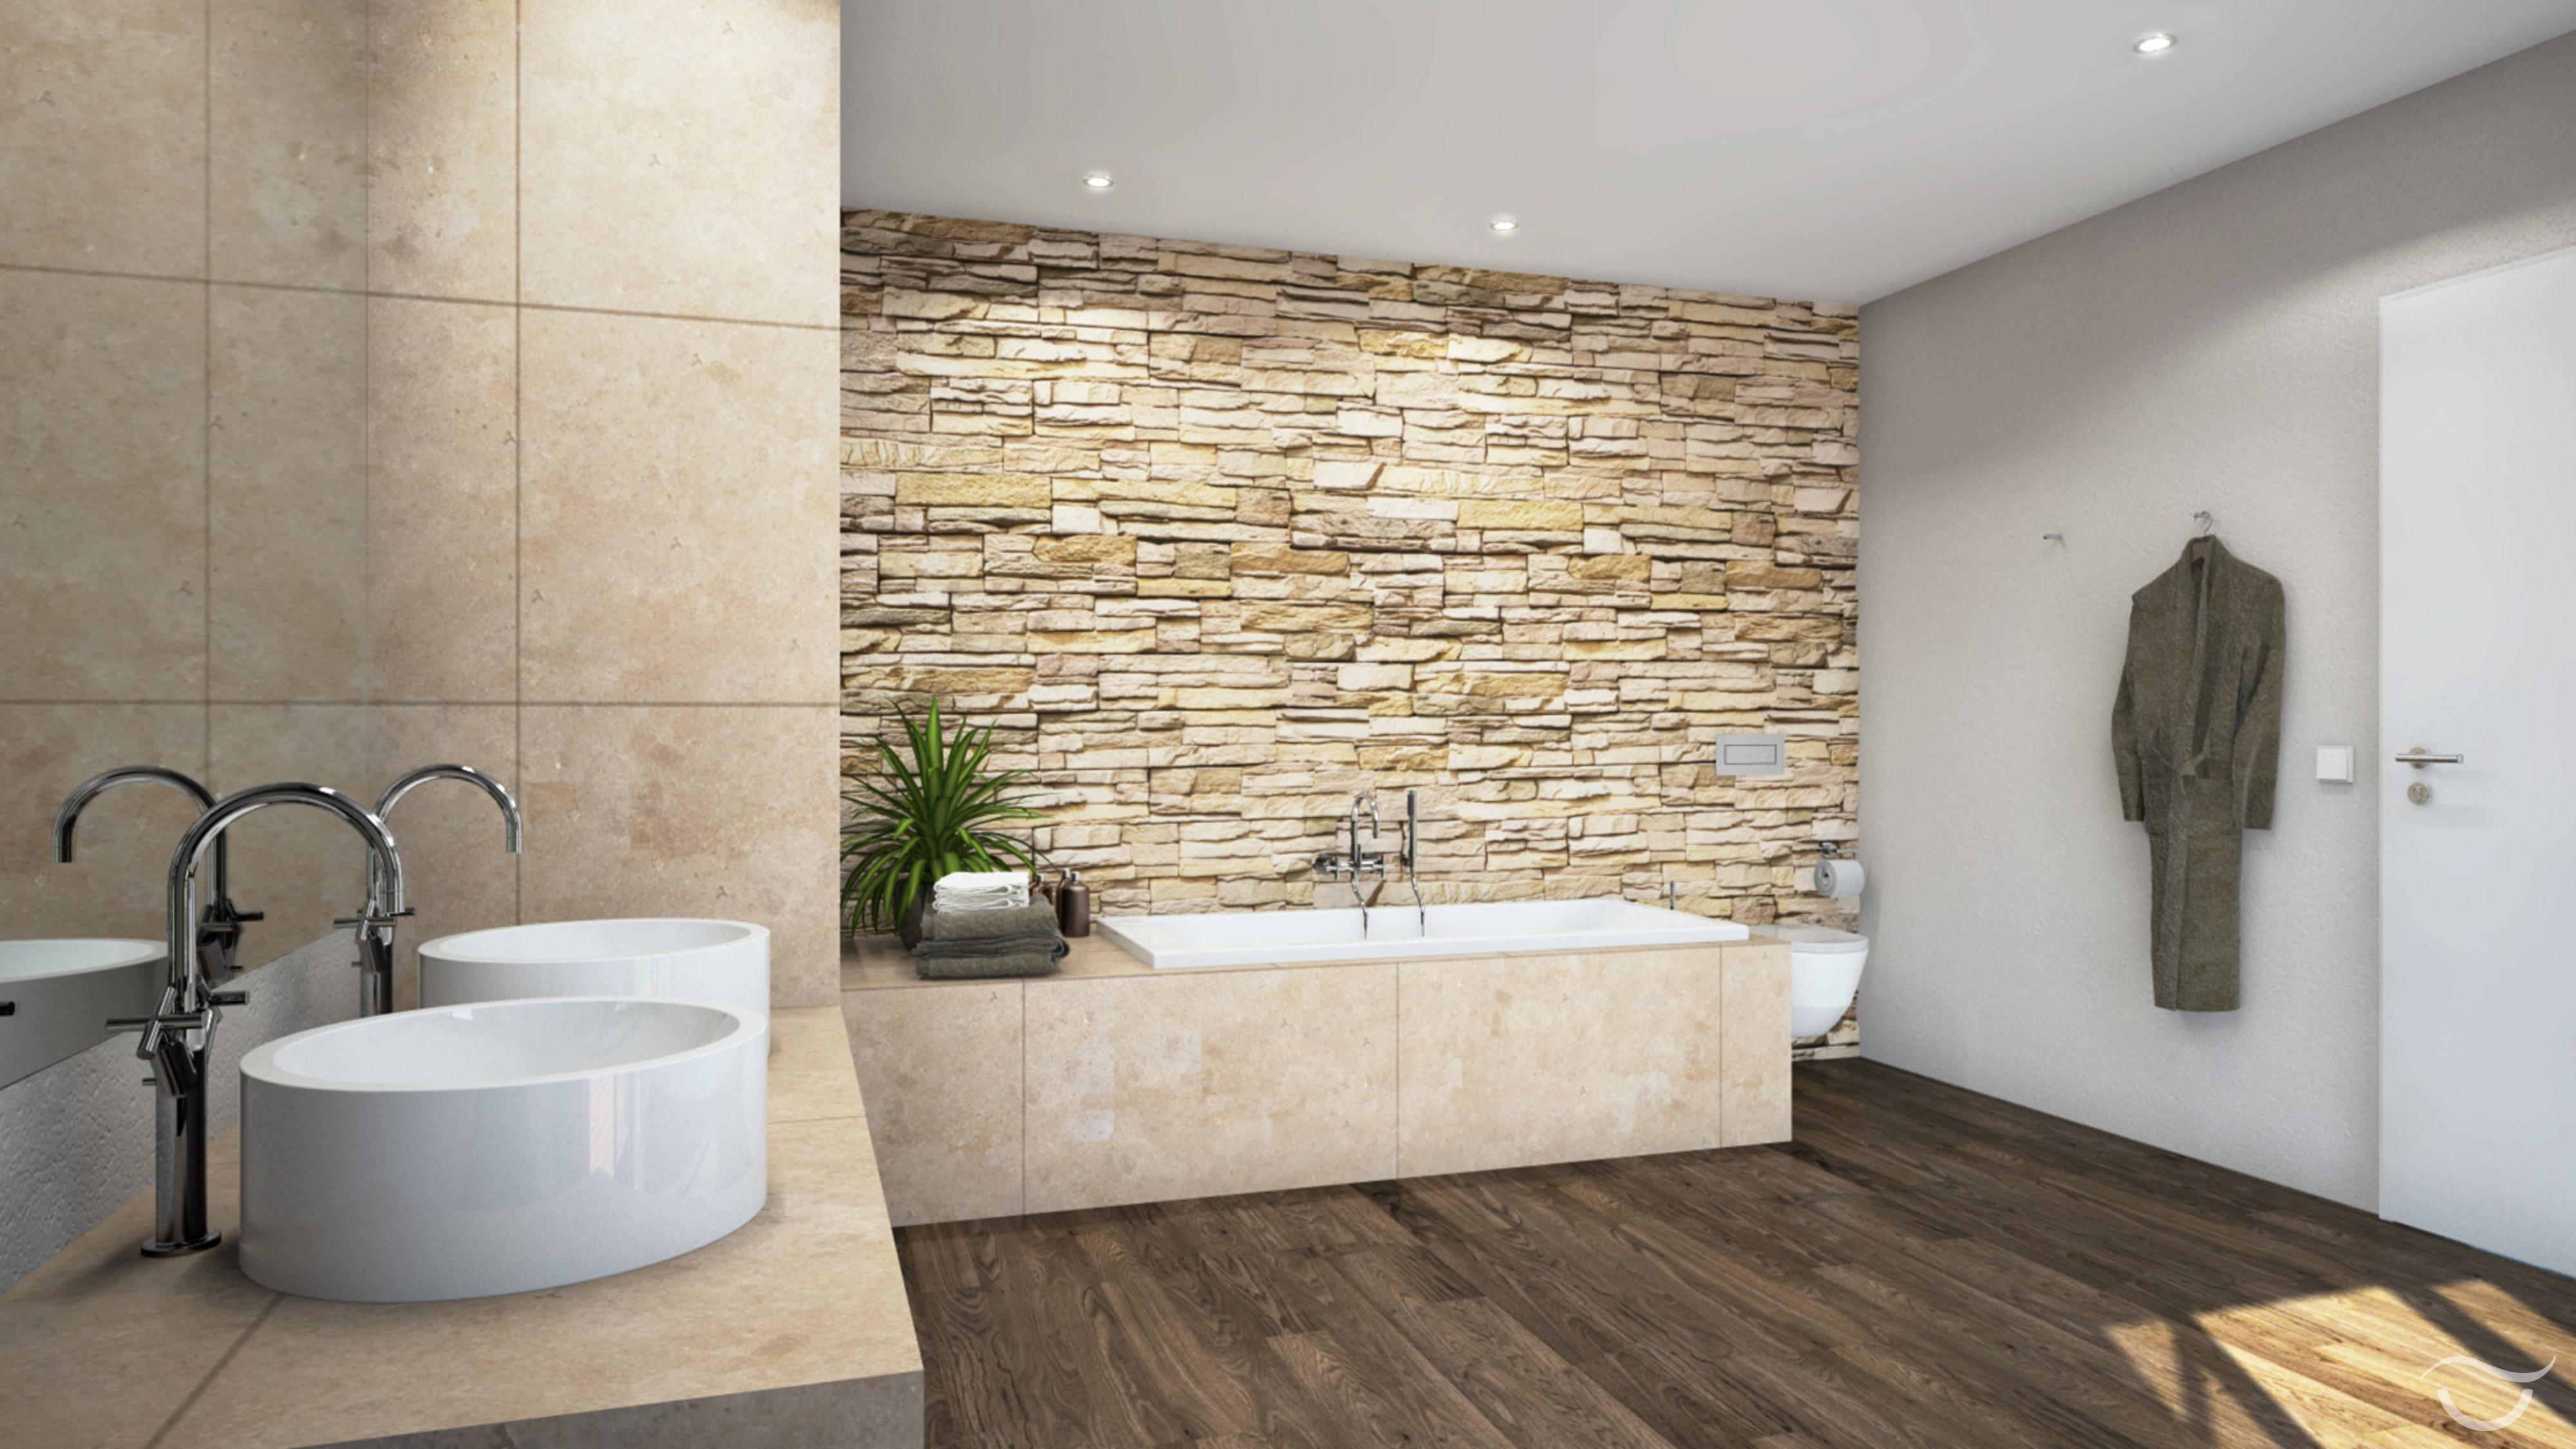 Design RUSTIO mit Steinmauer #badewanne #badezimmer #steinwand #rustikal #aufsatzwaschbecken ©Banovo GmbH